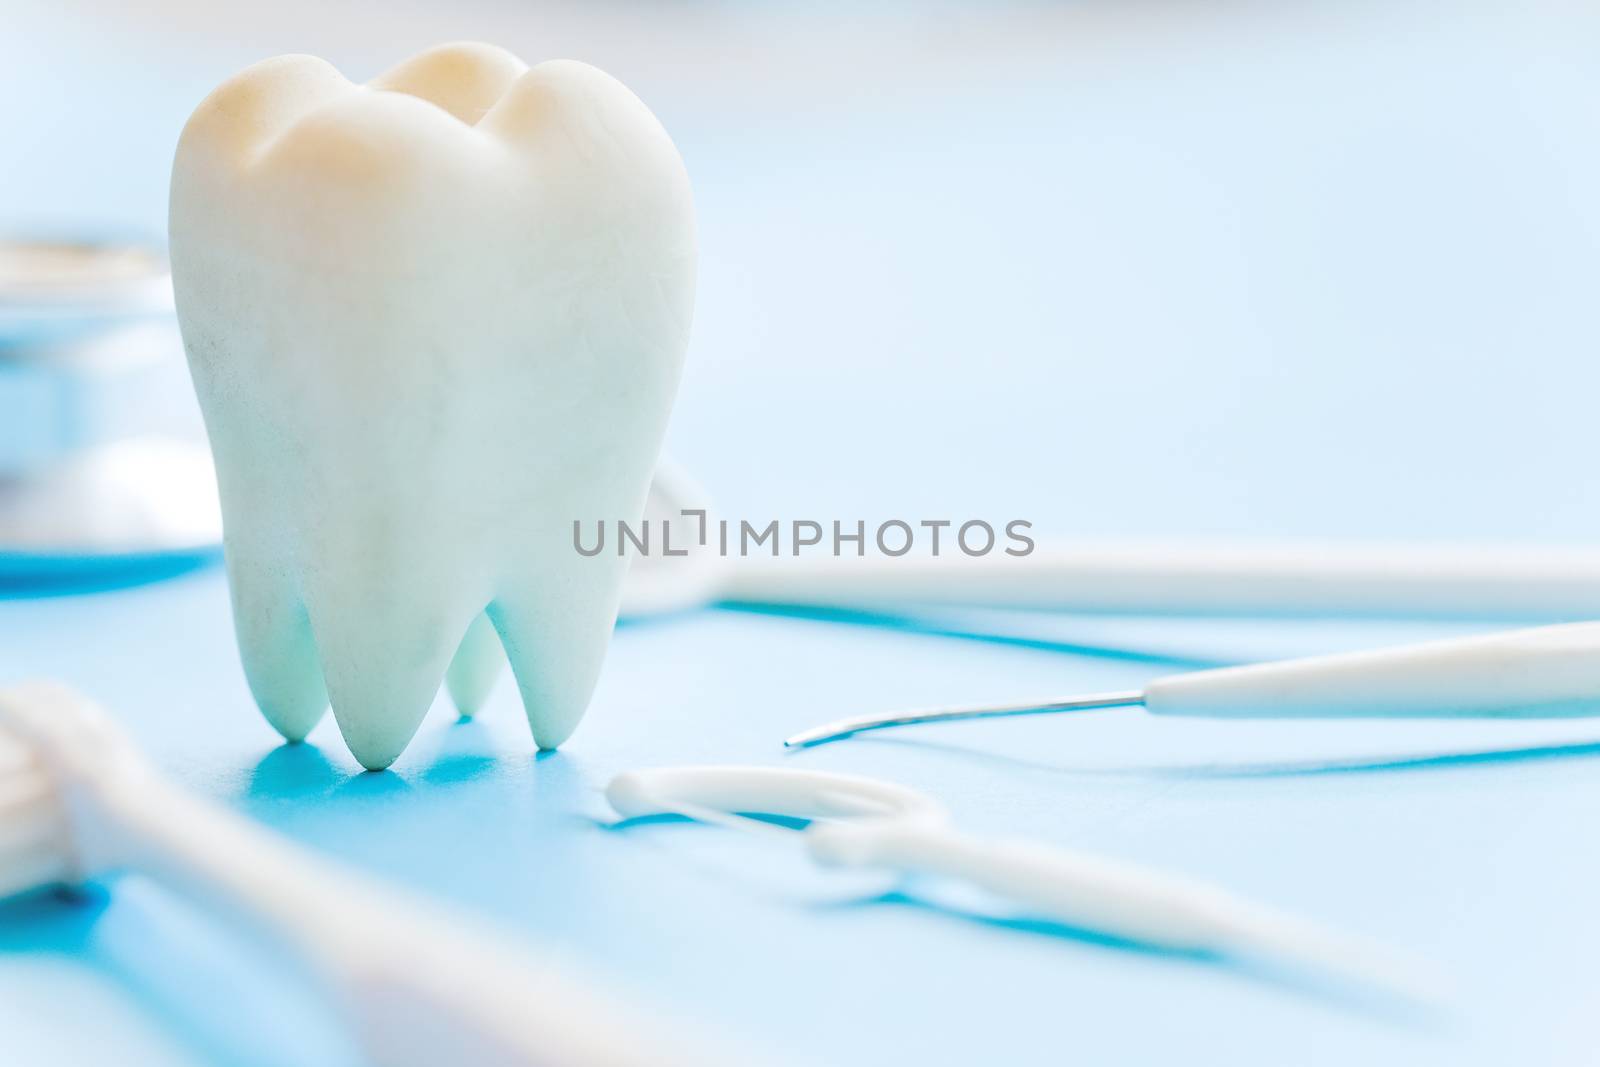 concept image of dental background